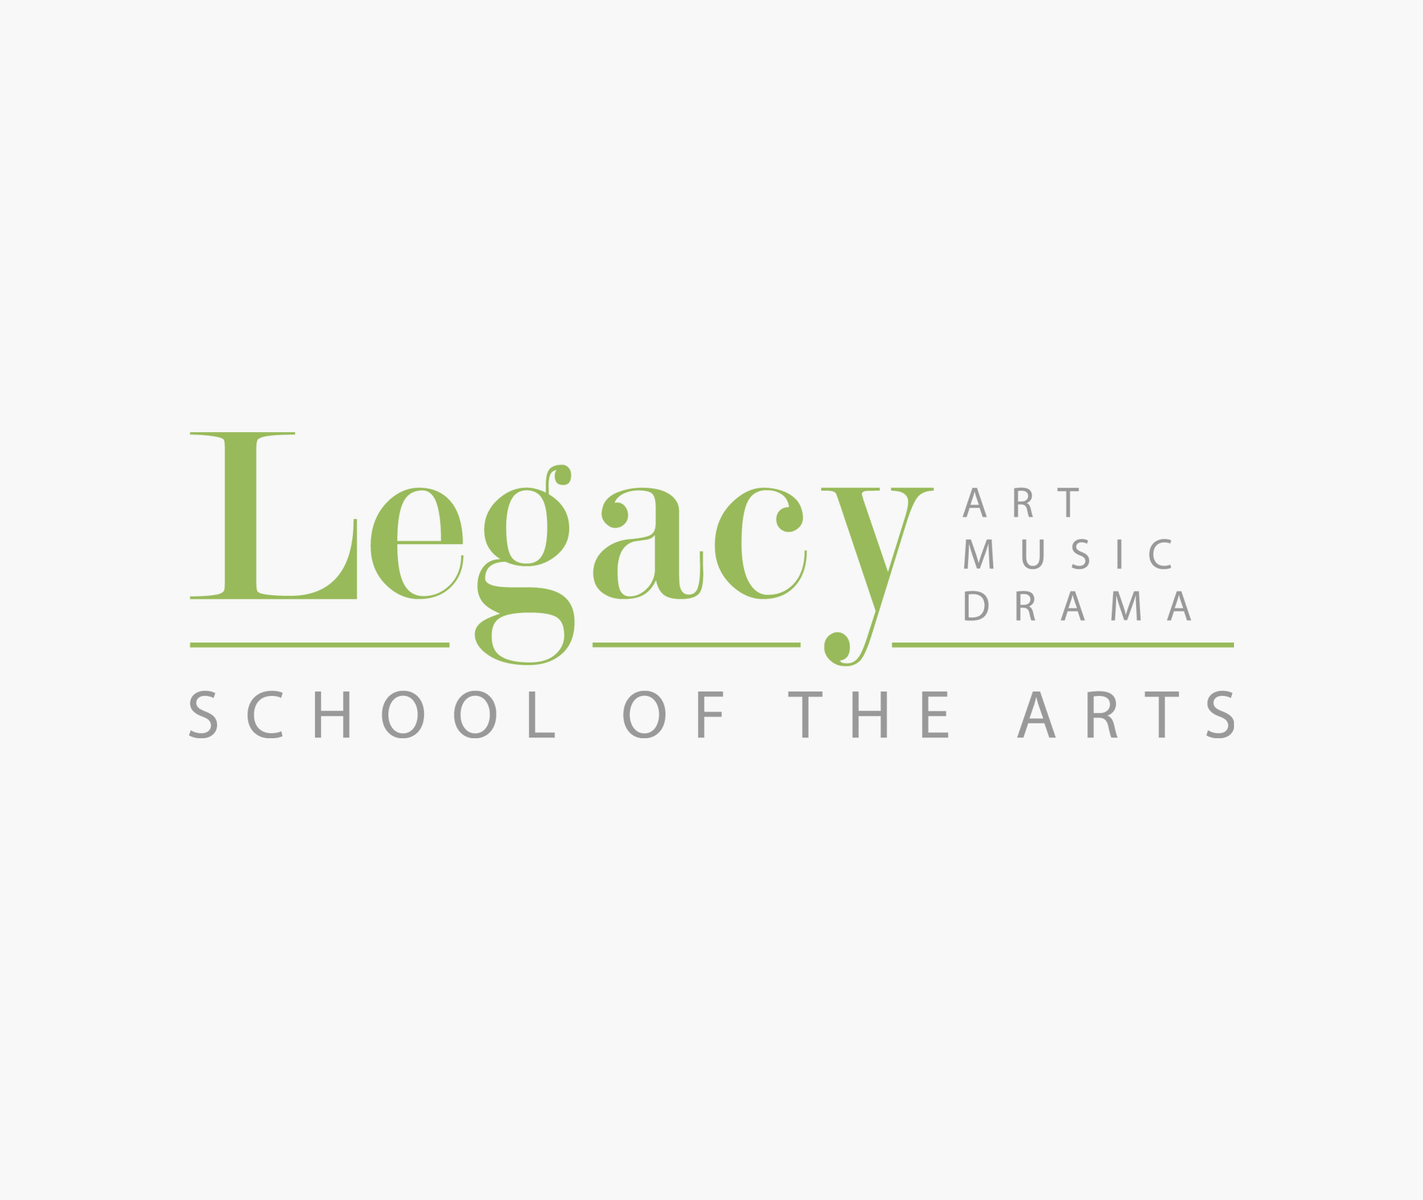 Legacy SOA Logo by Scott Lawrence on Dribbble